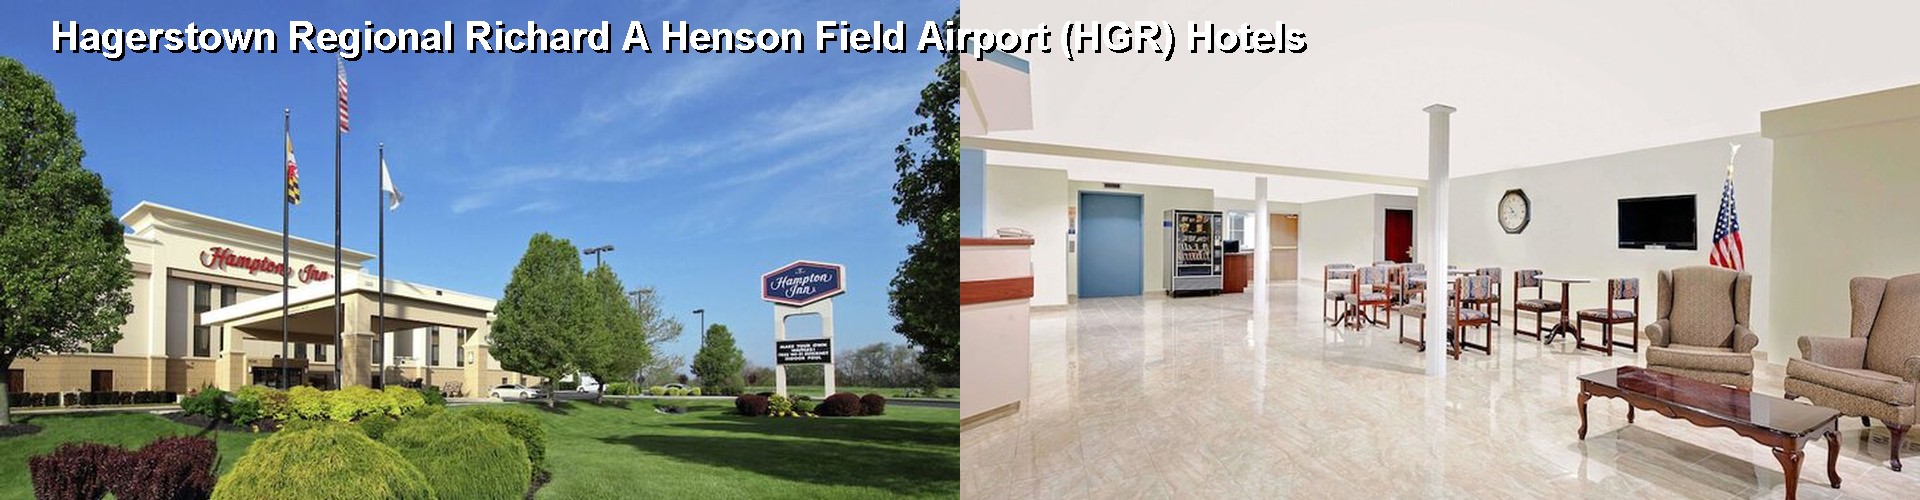 5 Best Hotels near Hagerstown Regional Richard A Henson Field Airport (HGR)